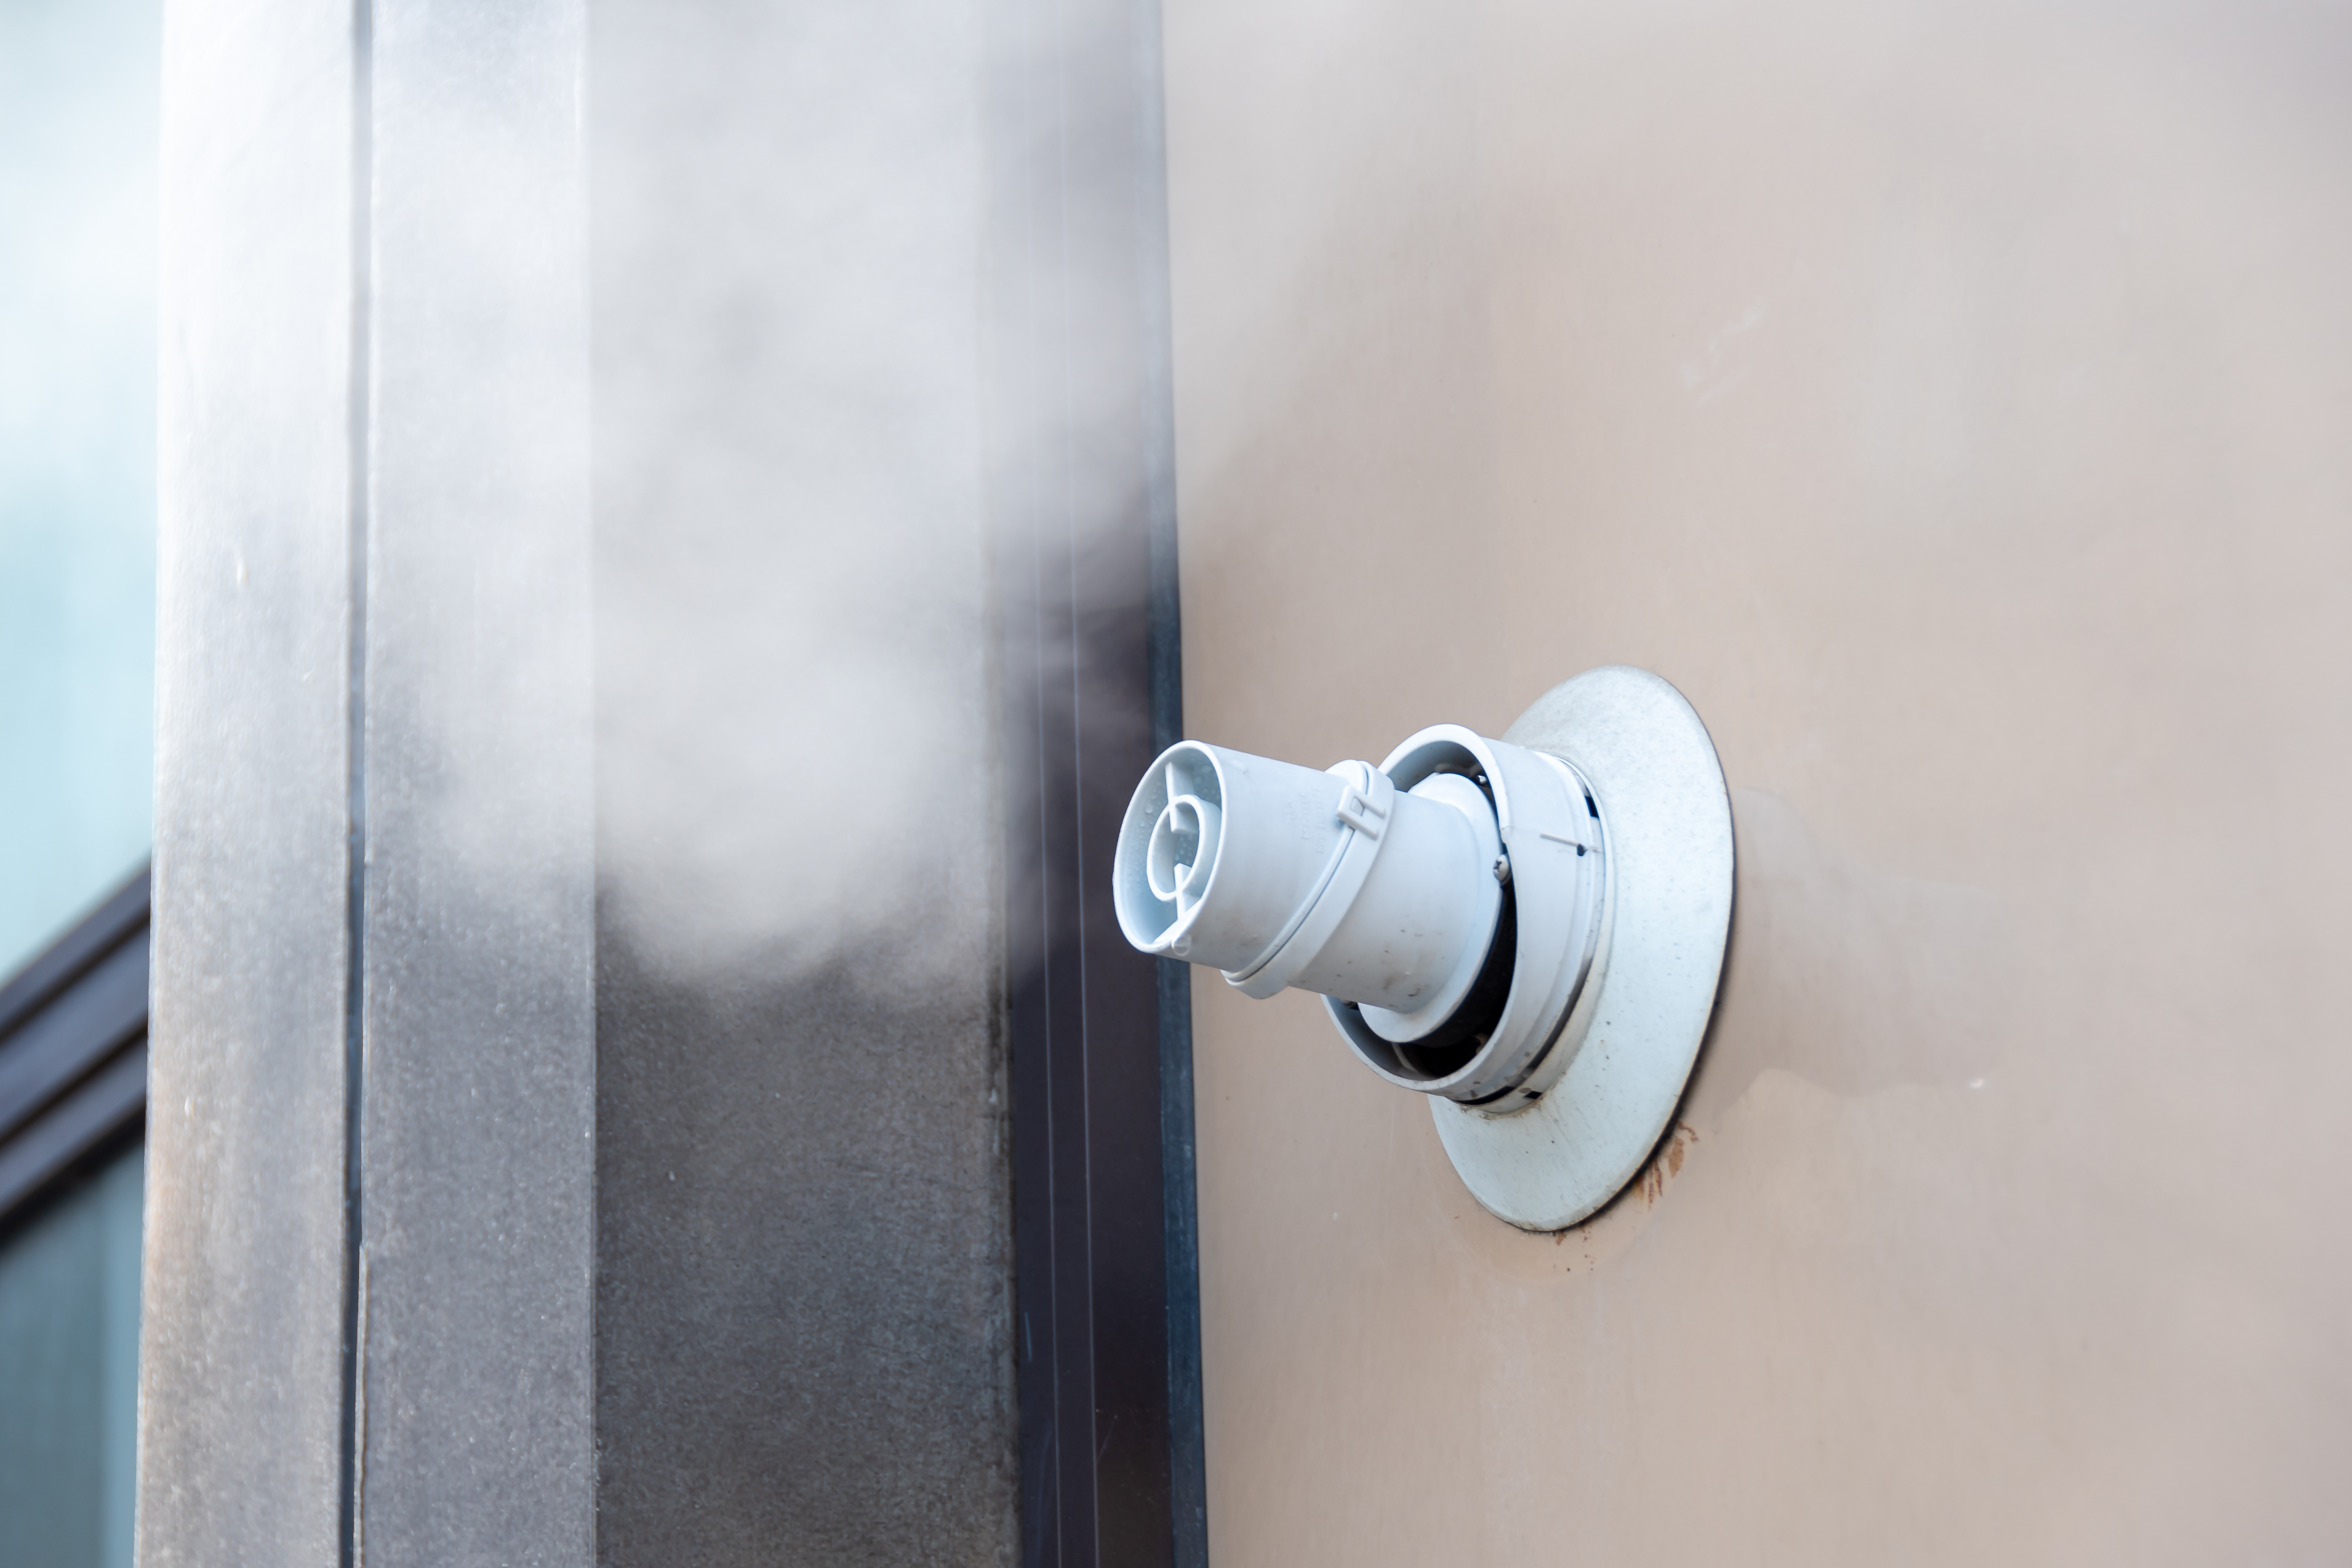 La chaudière à ventouse rejette les les fumées à l’extérieur. ©HJBC, Adobe Stock